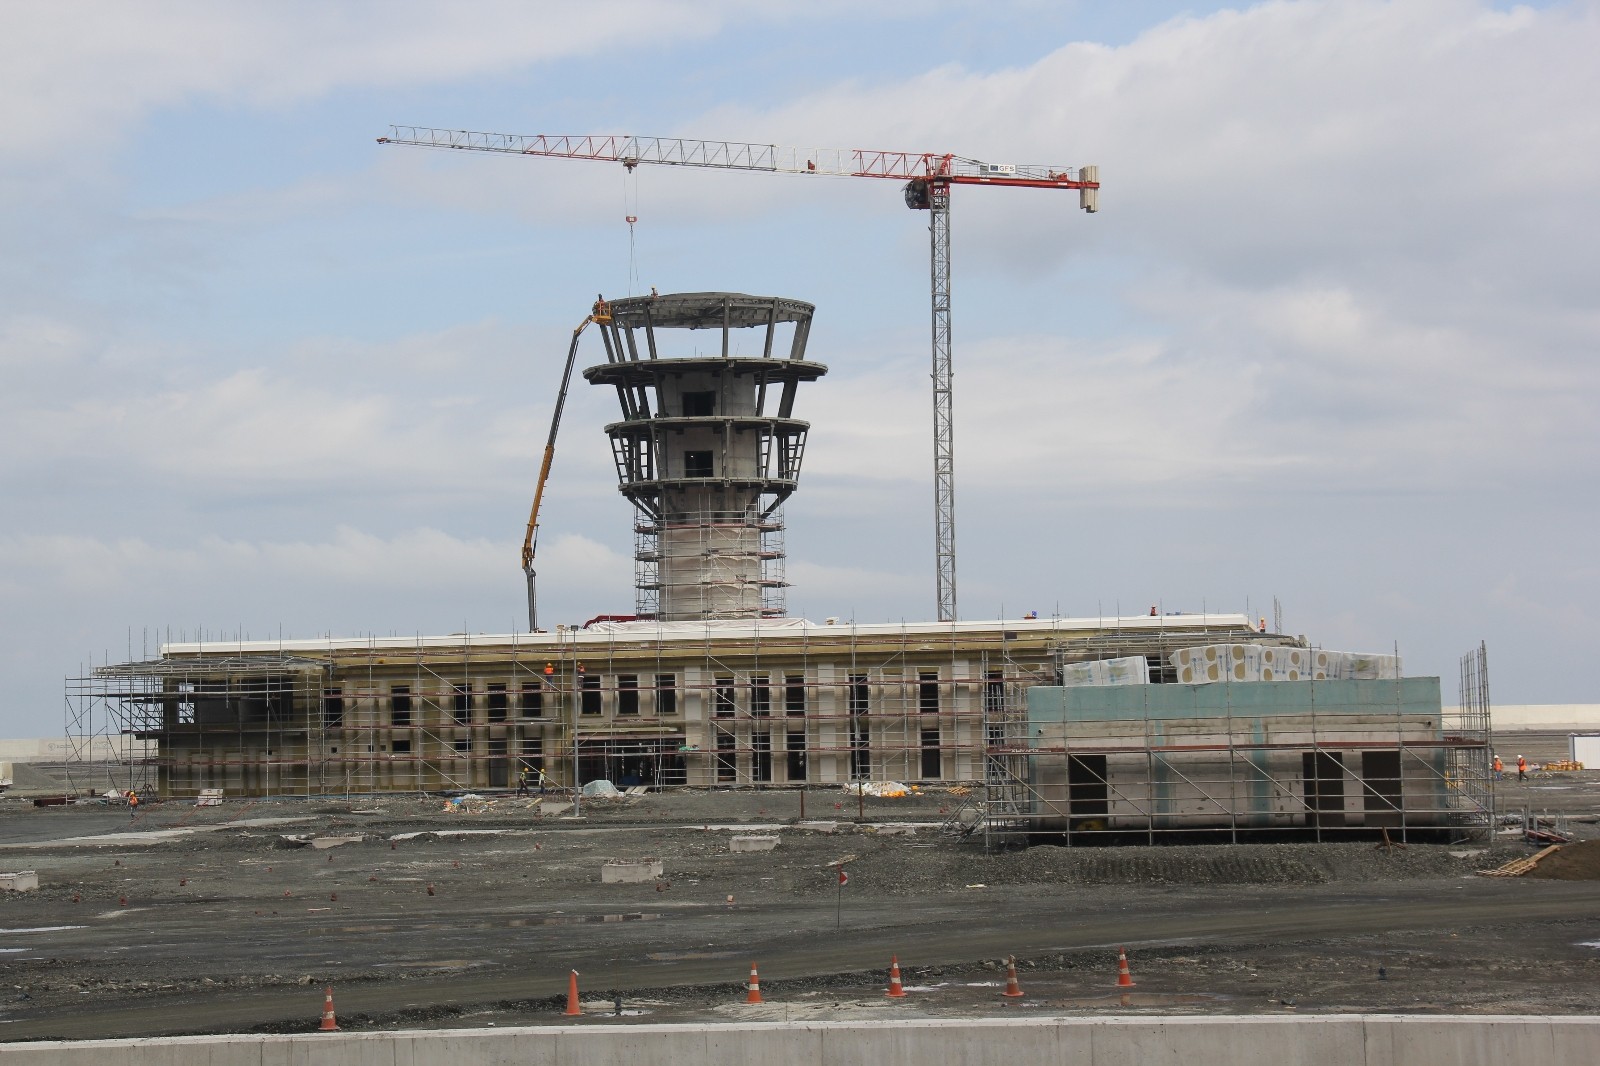 Rize-Artvin Havalimanı’nın çay bardağı şeklinde inşa edilen uçuş kulesi şekillenme başladı